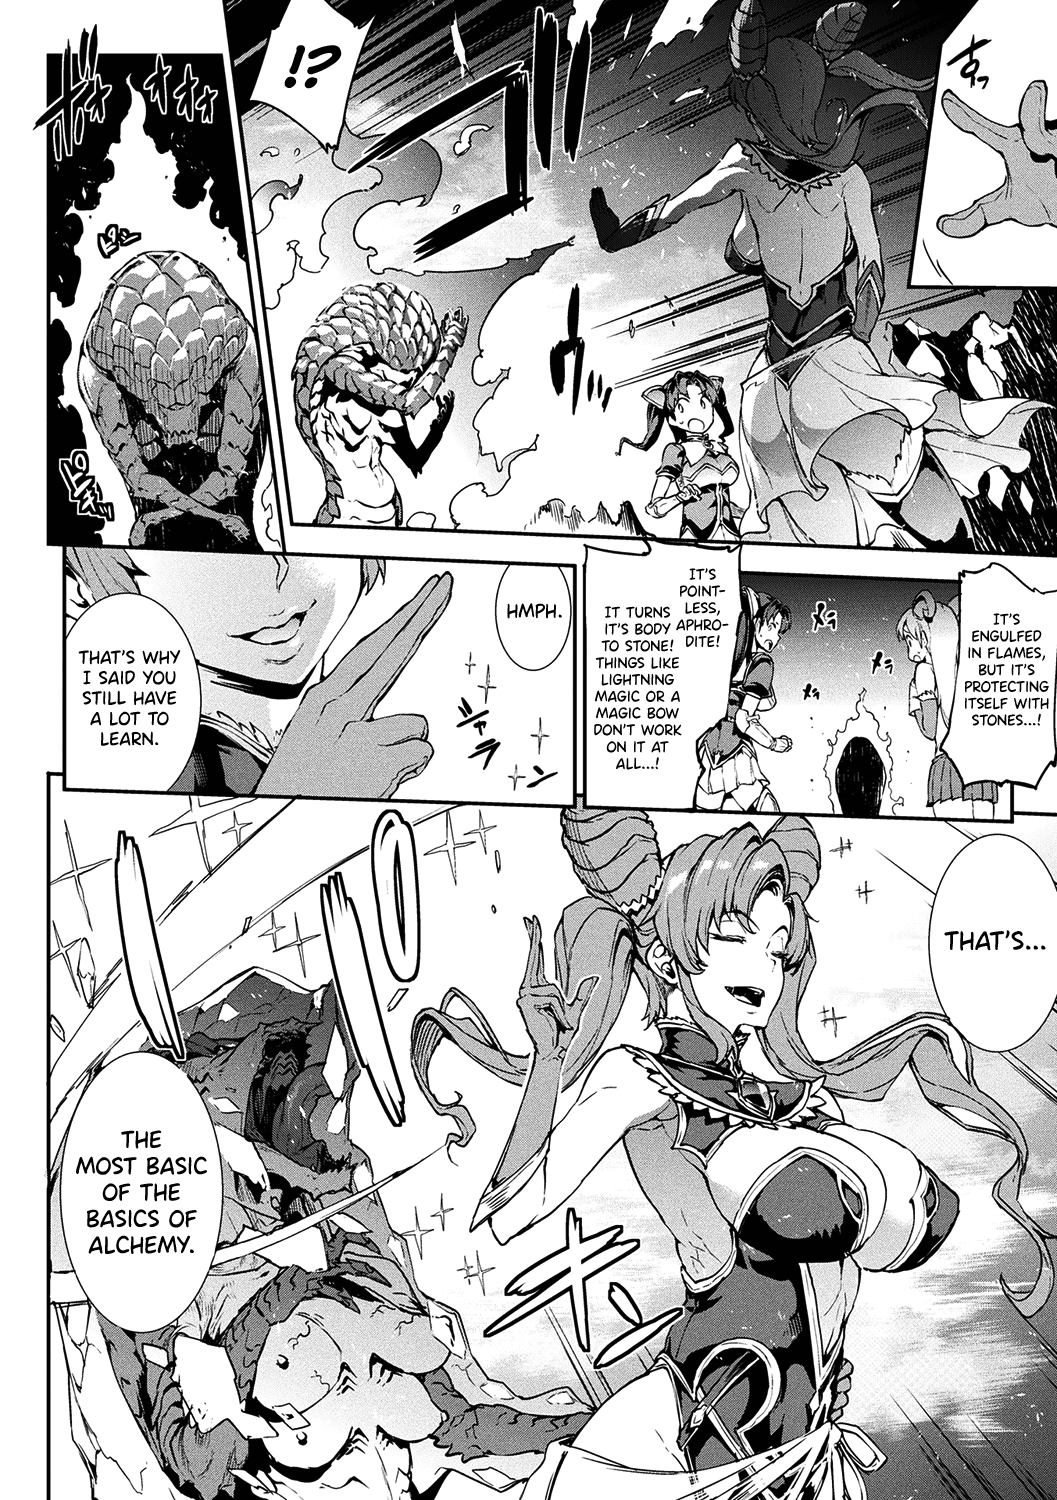 Raikou Shinki Igis Magia -Pandra Saga 3Rd Ignition - Page 2